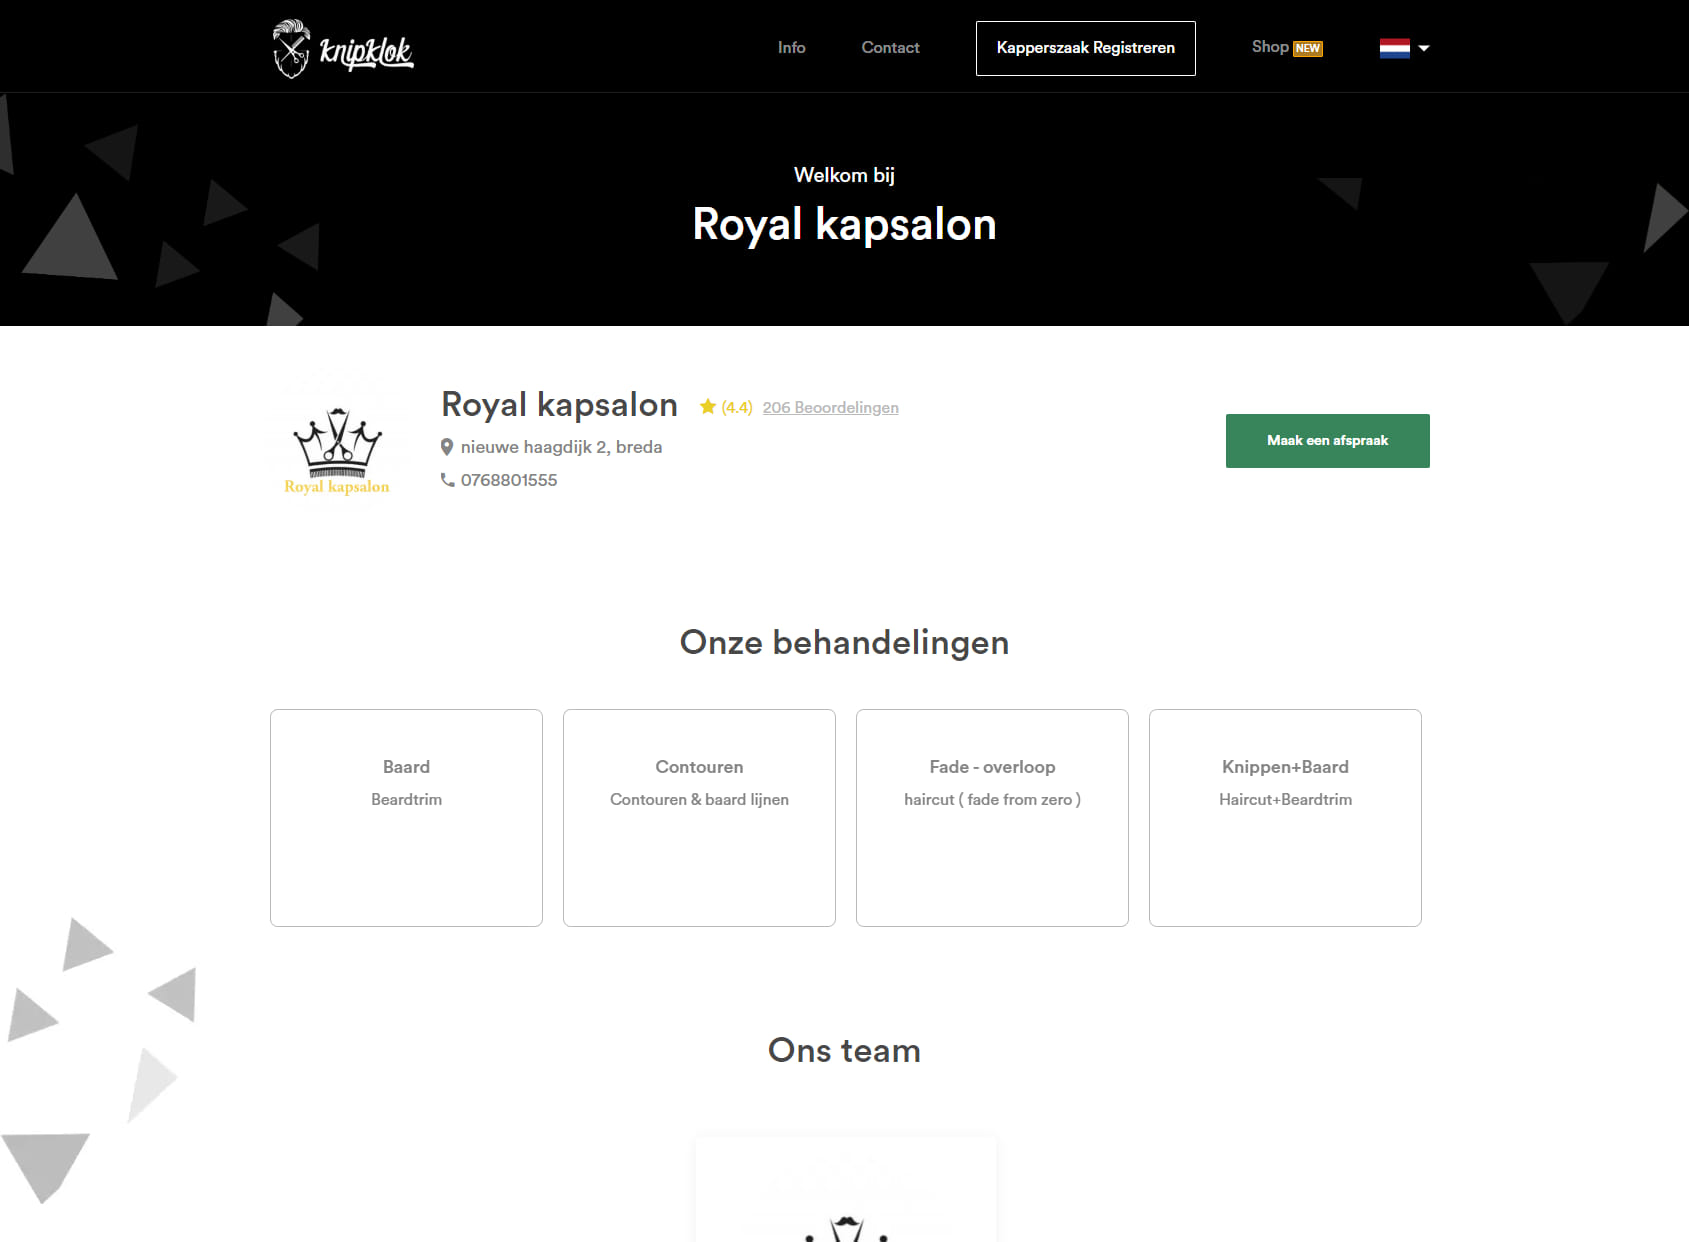 Royal Kapsalon